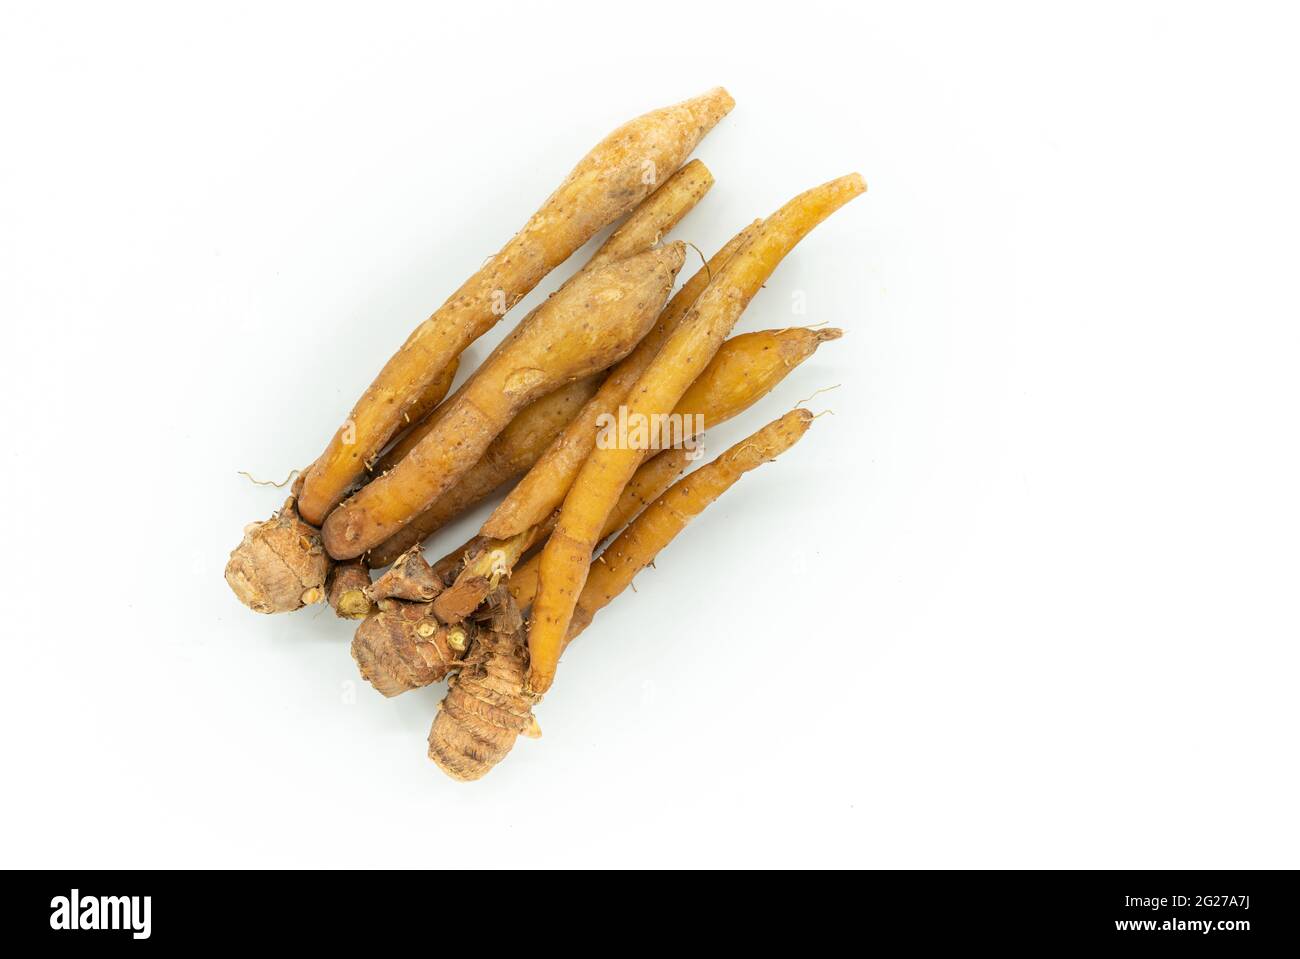 Nahaufnahme von frischen Fingerwurzeln oder Galingale auf weißem Hintergrund. Draufsicht Bild der Kräuterpflanze Finger Root oder Krachai in Thailand Sprache. Stockfoto